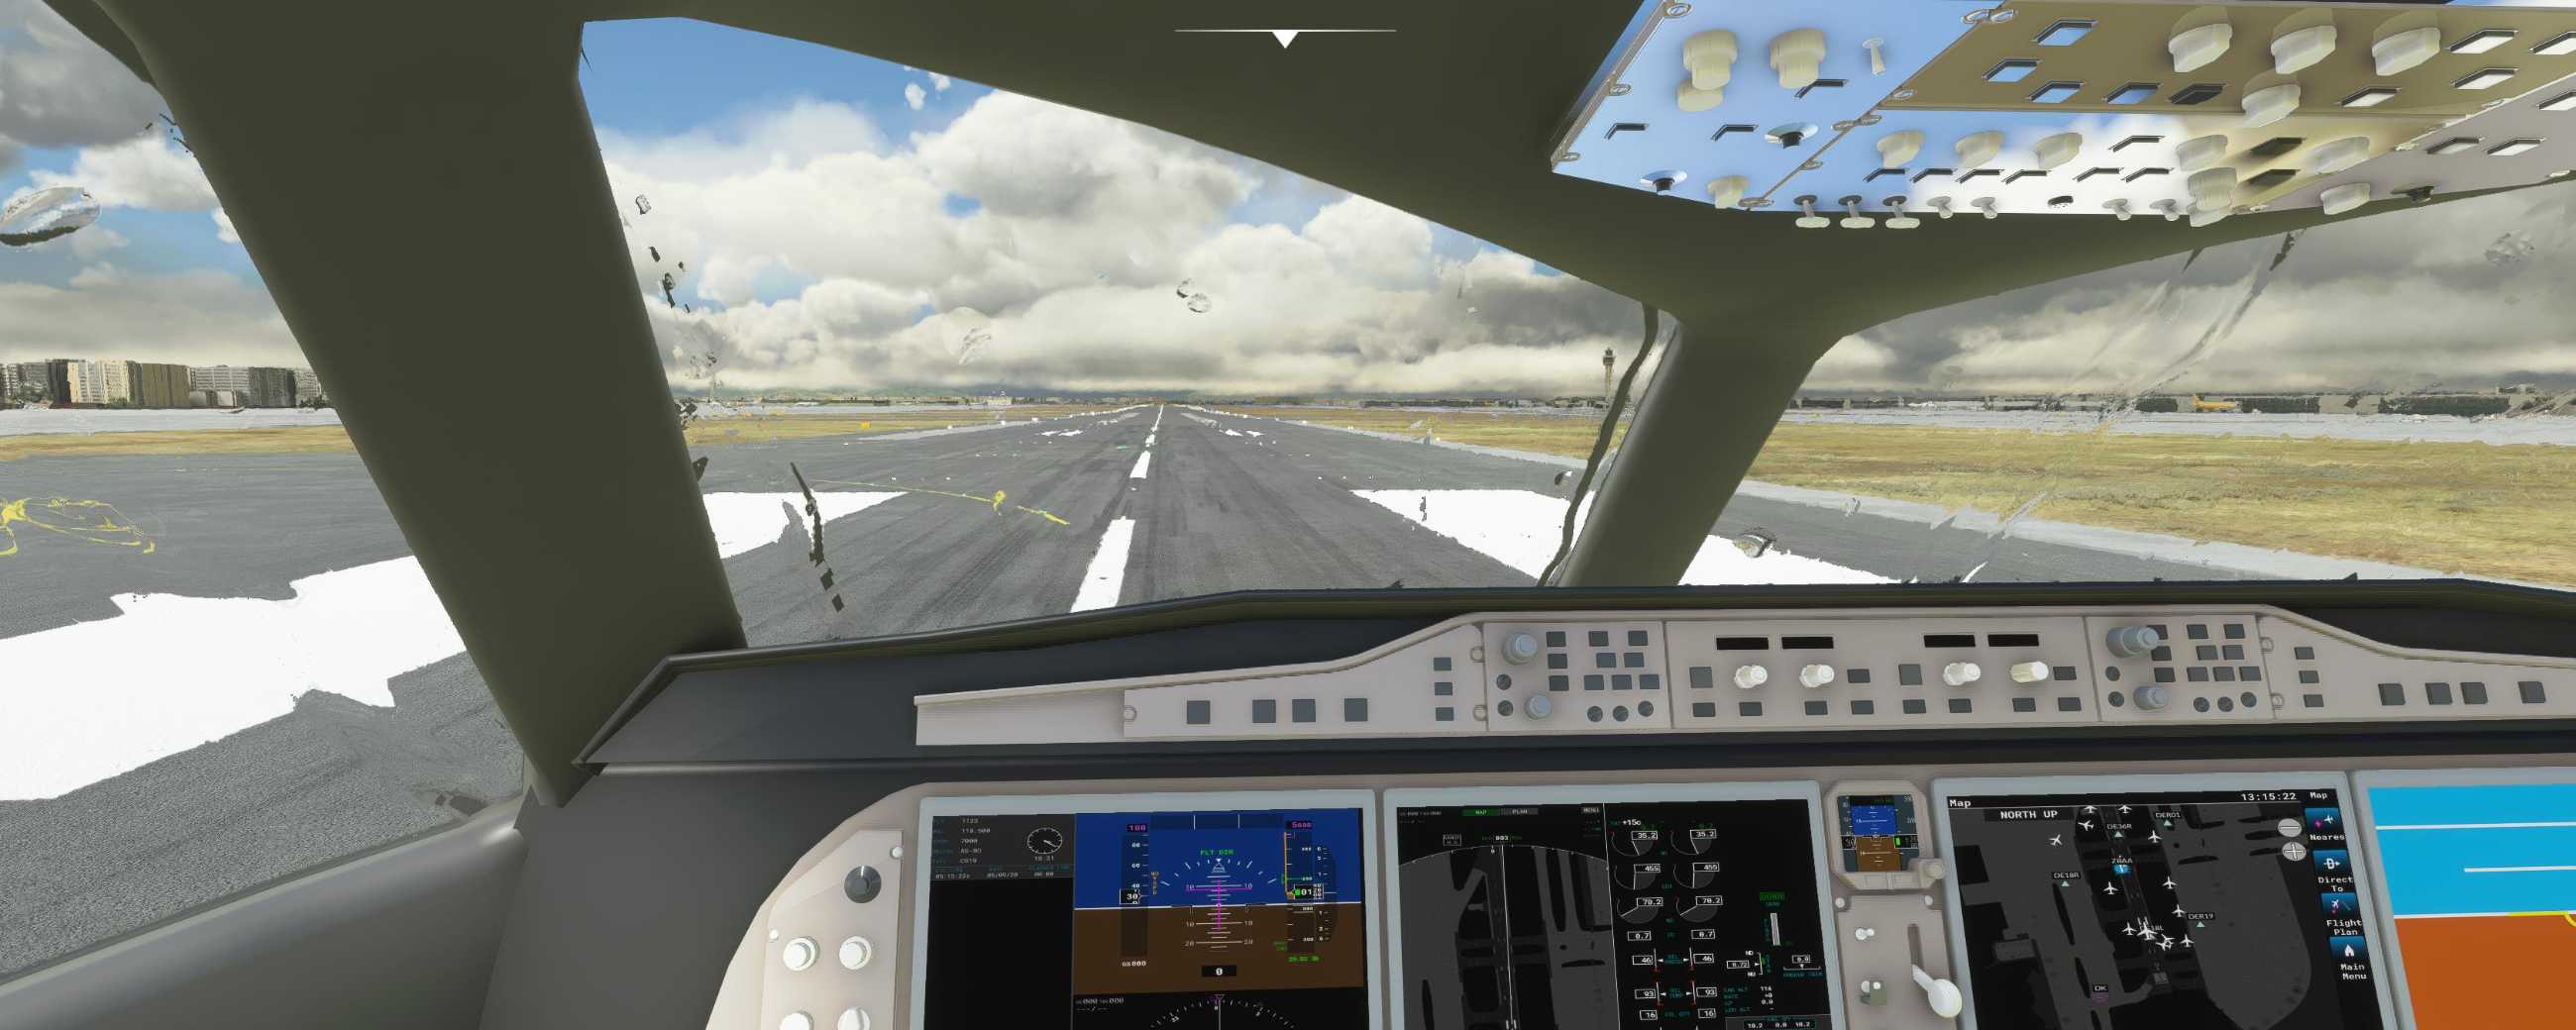 FYCYC-C919 国产大飞机机模 微软模拟飞行演示-5315 